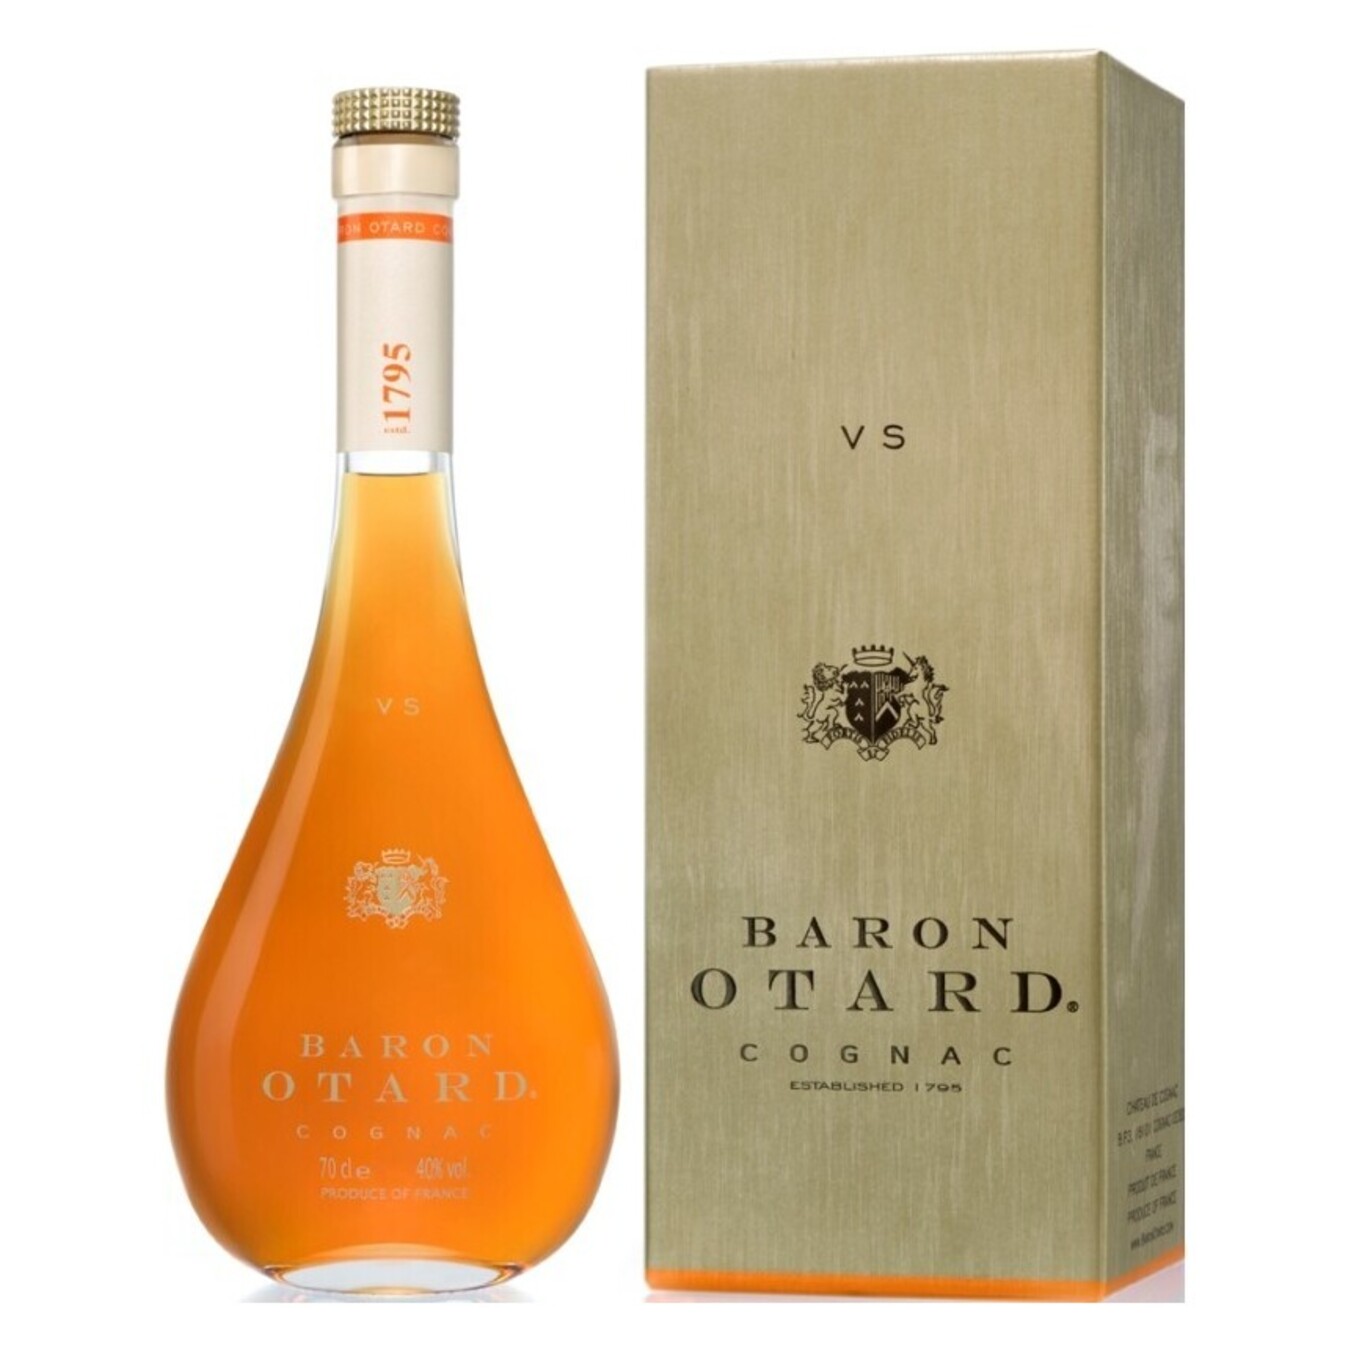 Cognac Baron Otard VS 40% 0.7 l in a box